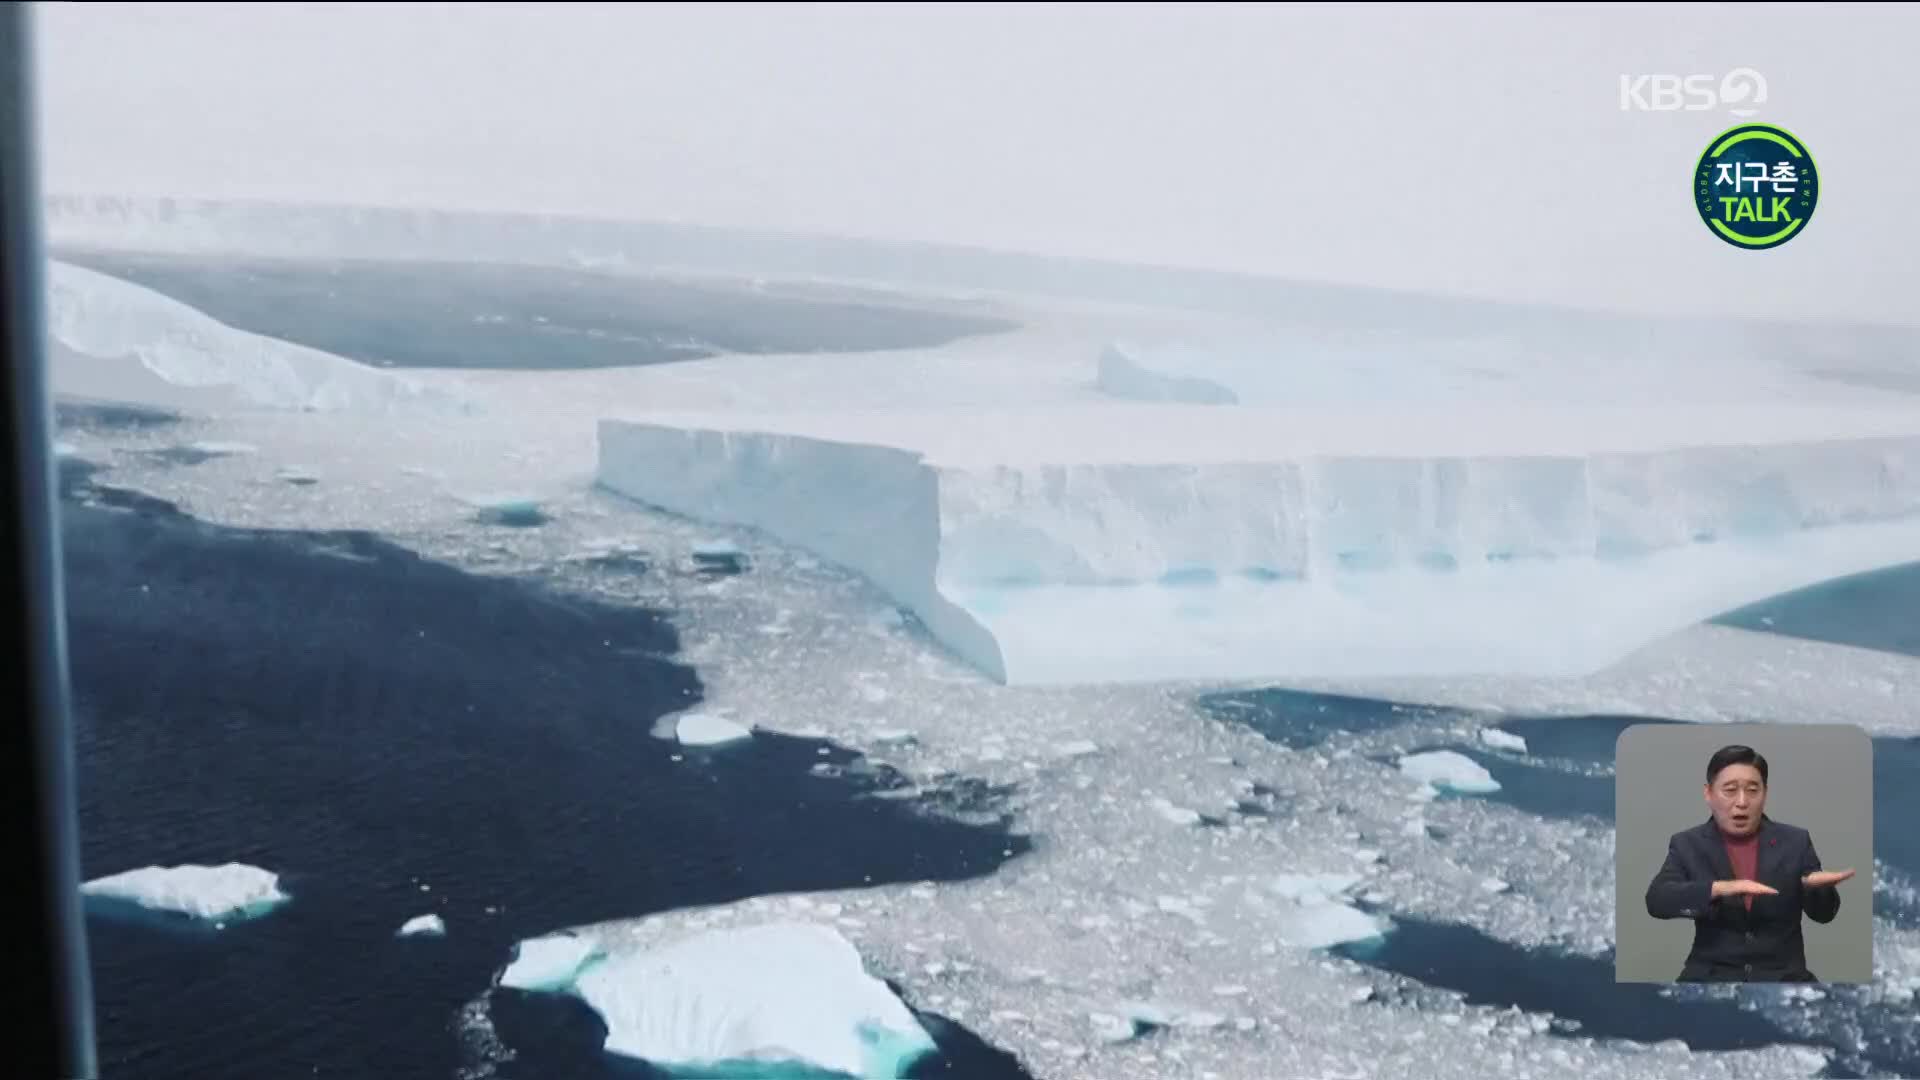 [지구촌 Talk] 세계 최대 크기 남극 빙산 영국령 섬에 근접